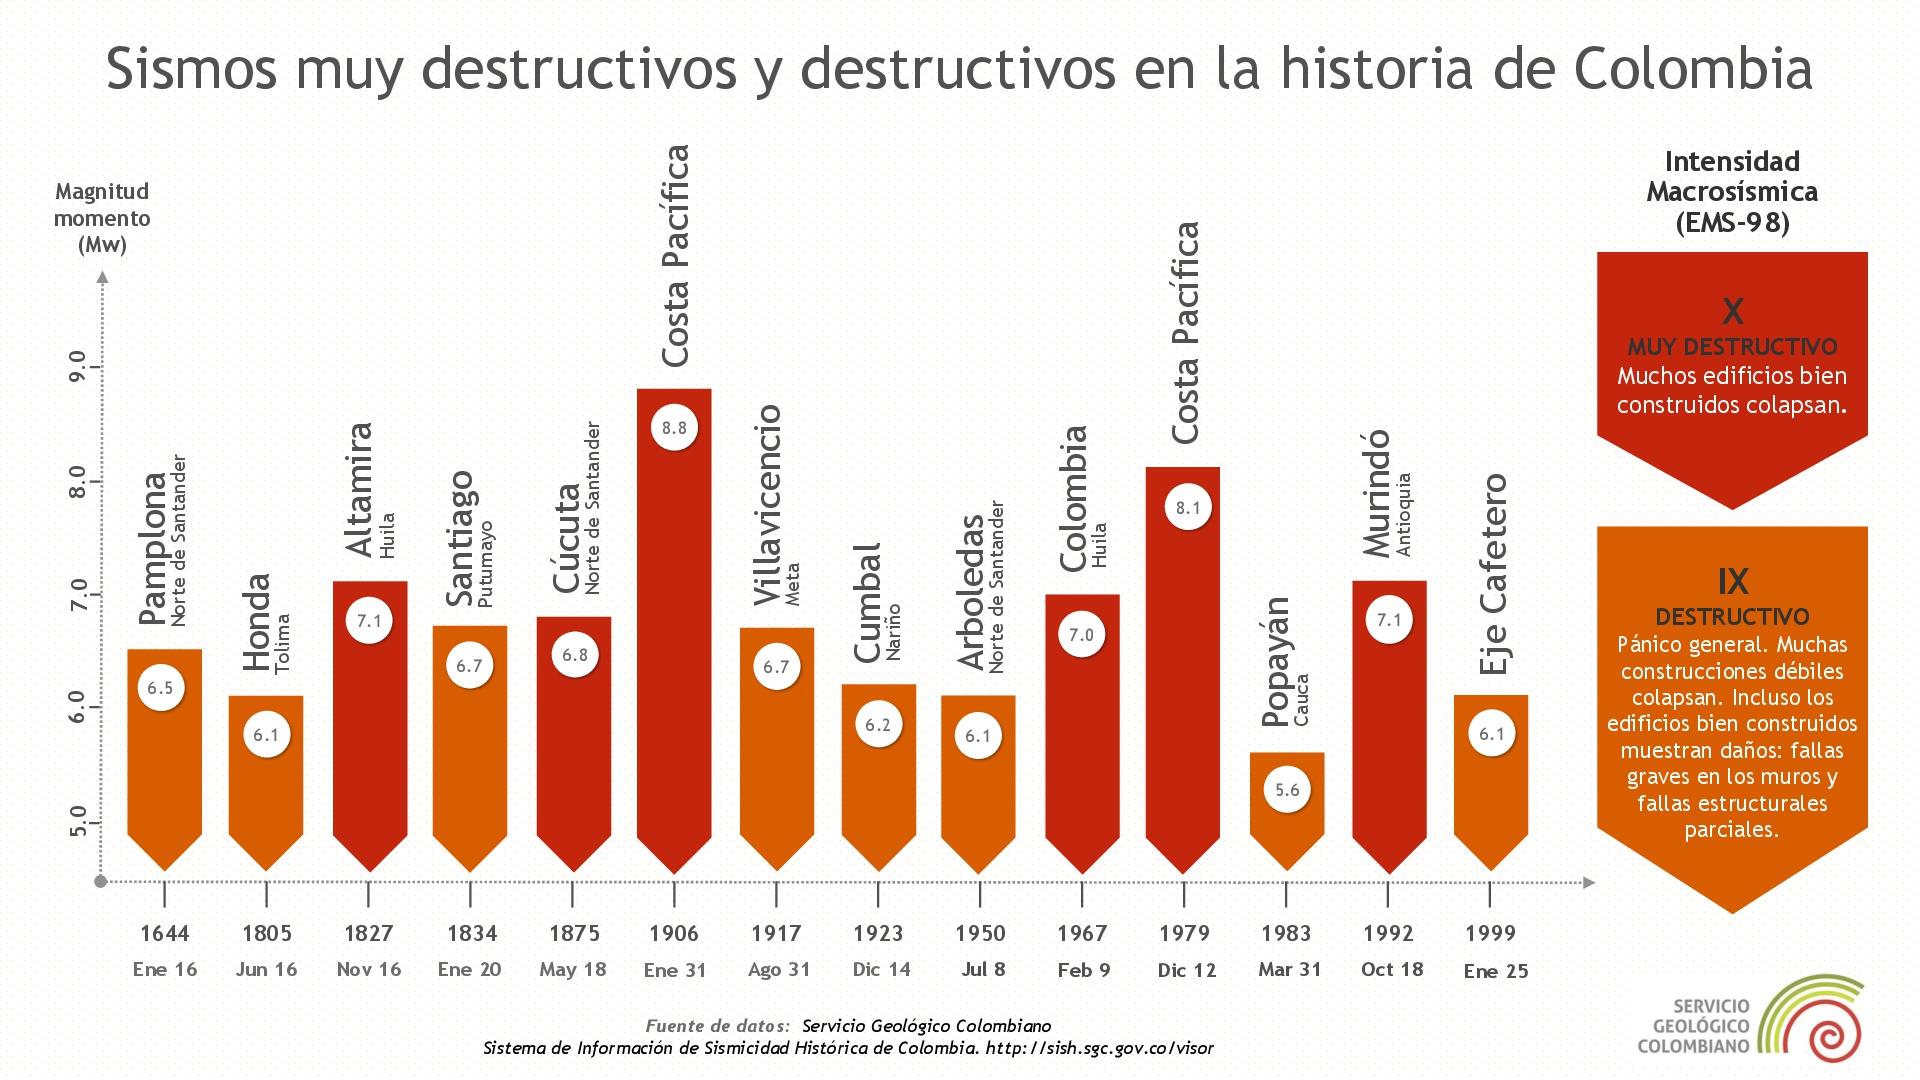 Sismos destructivos en la historia de Colombia Red Sismologica